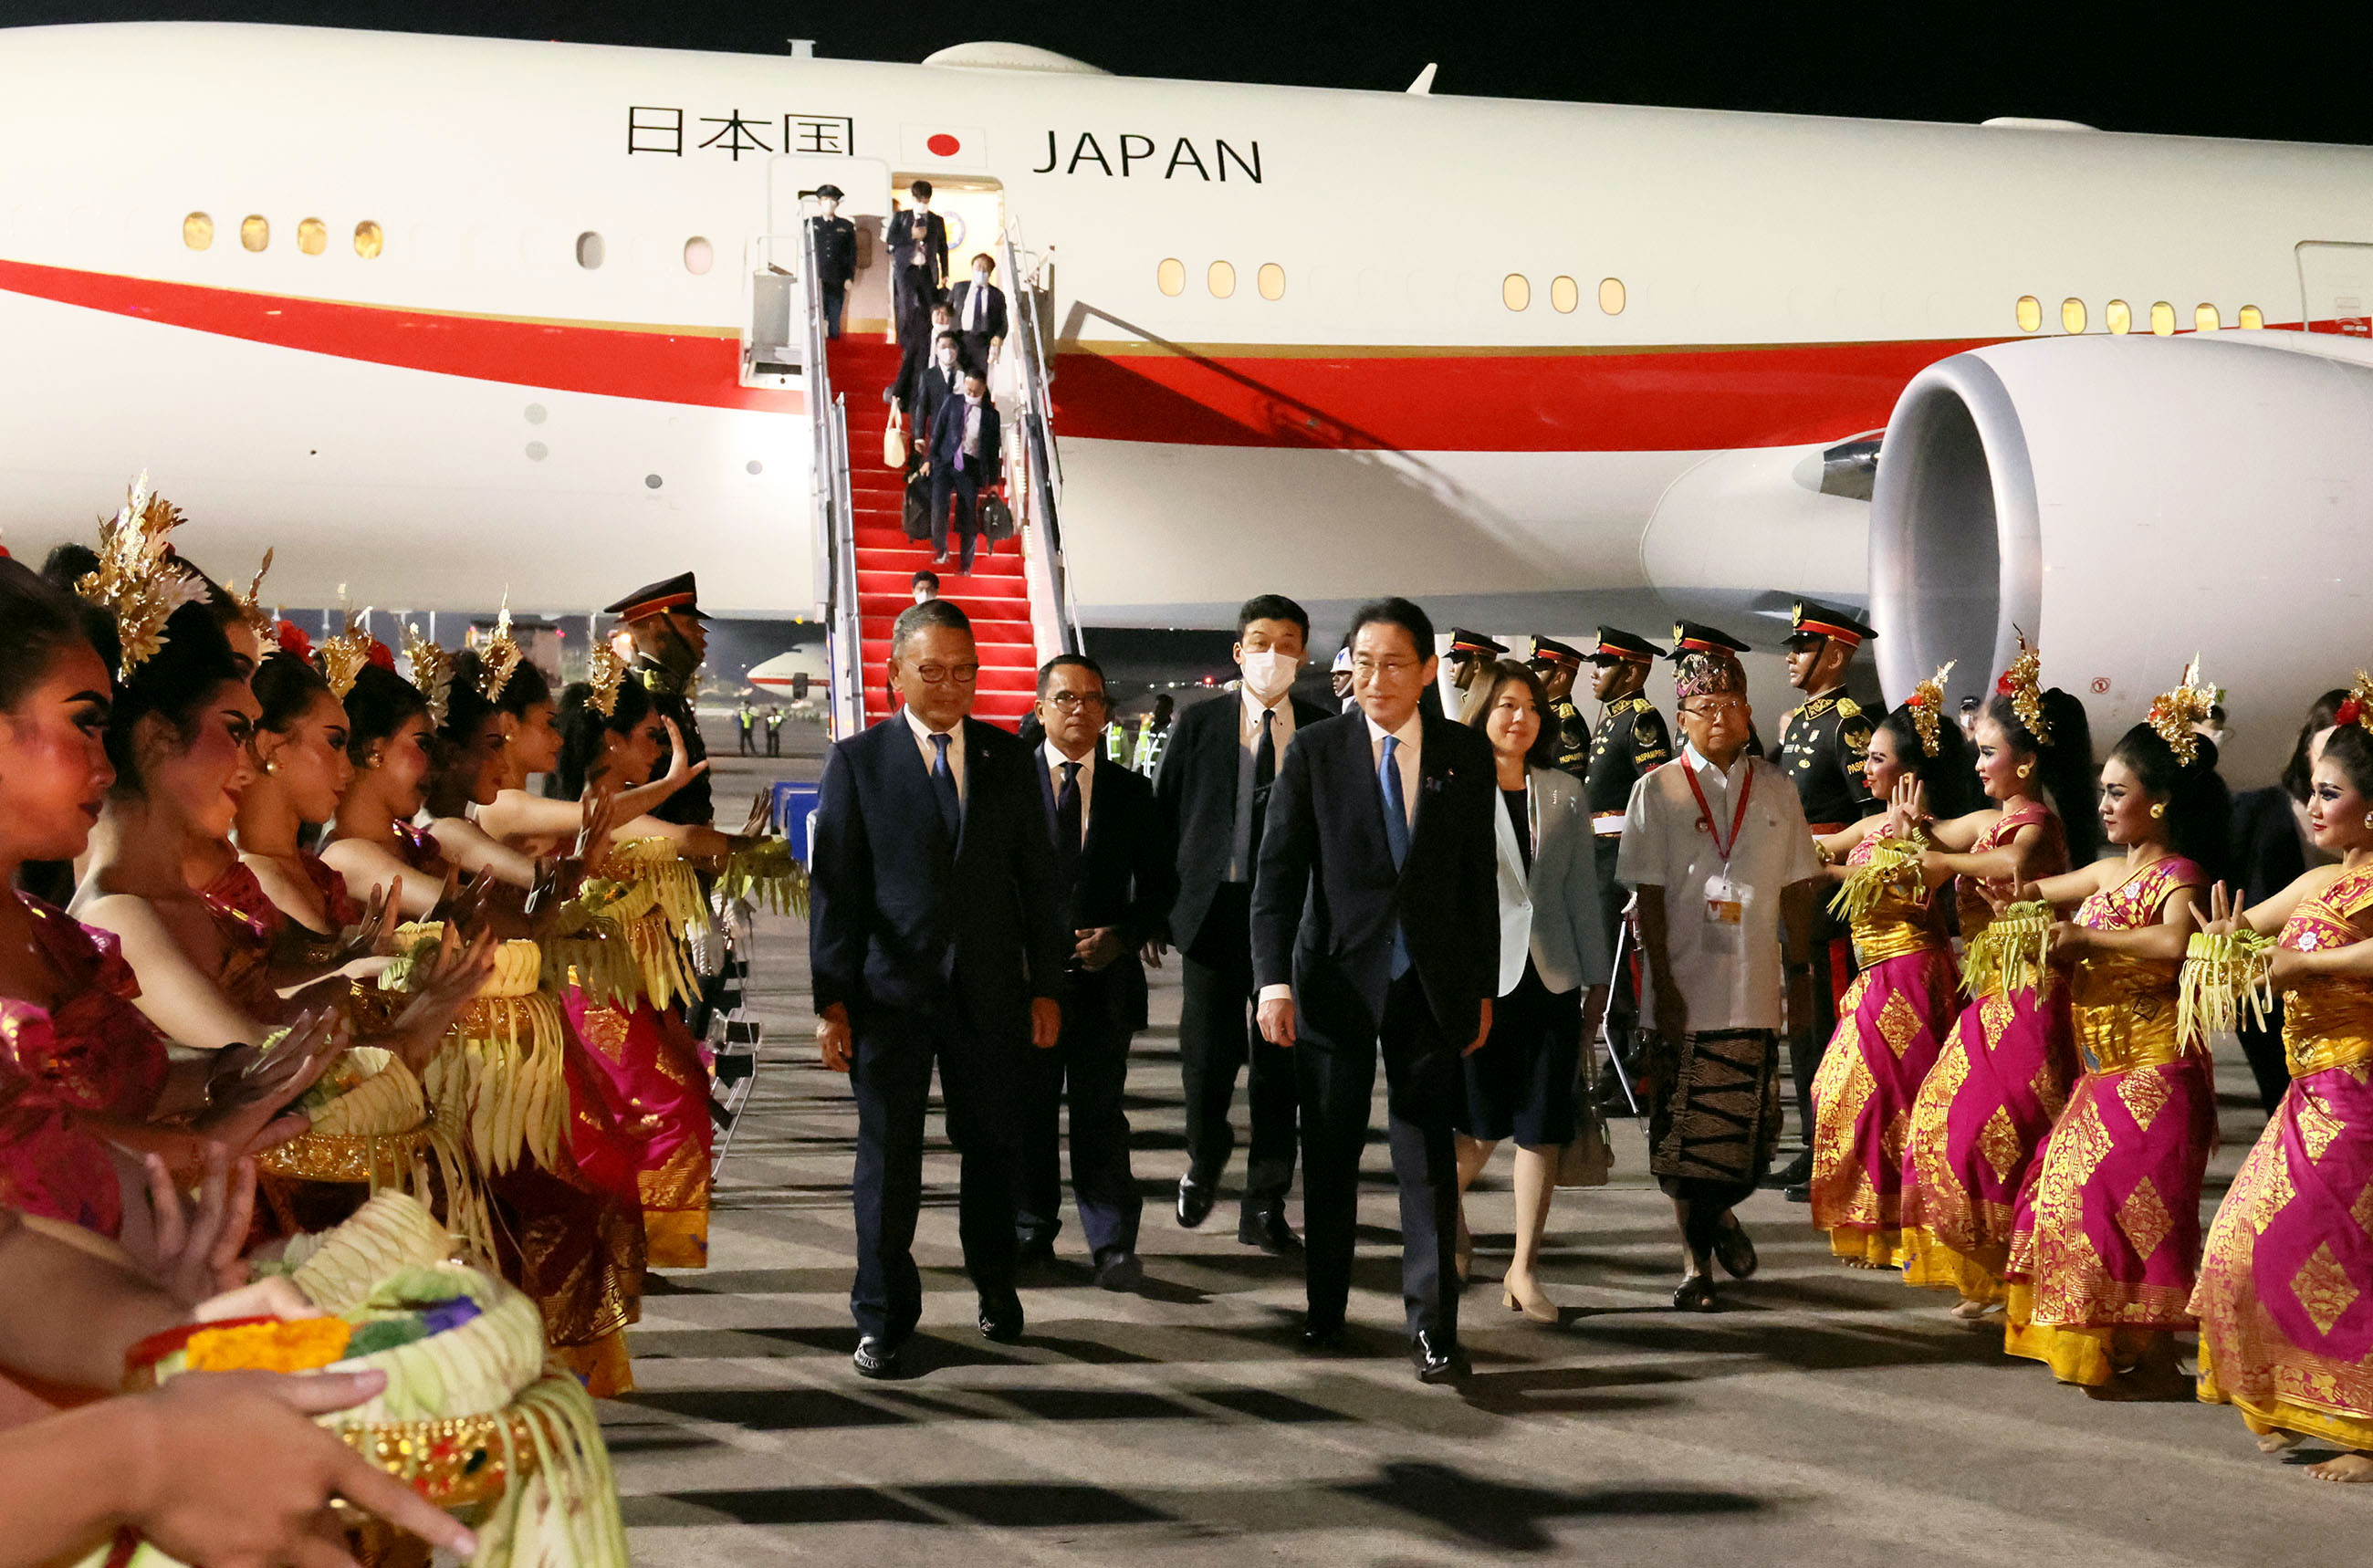 Prime Minister Kishida arriving in Indonesia (3)